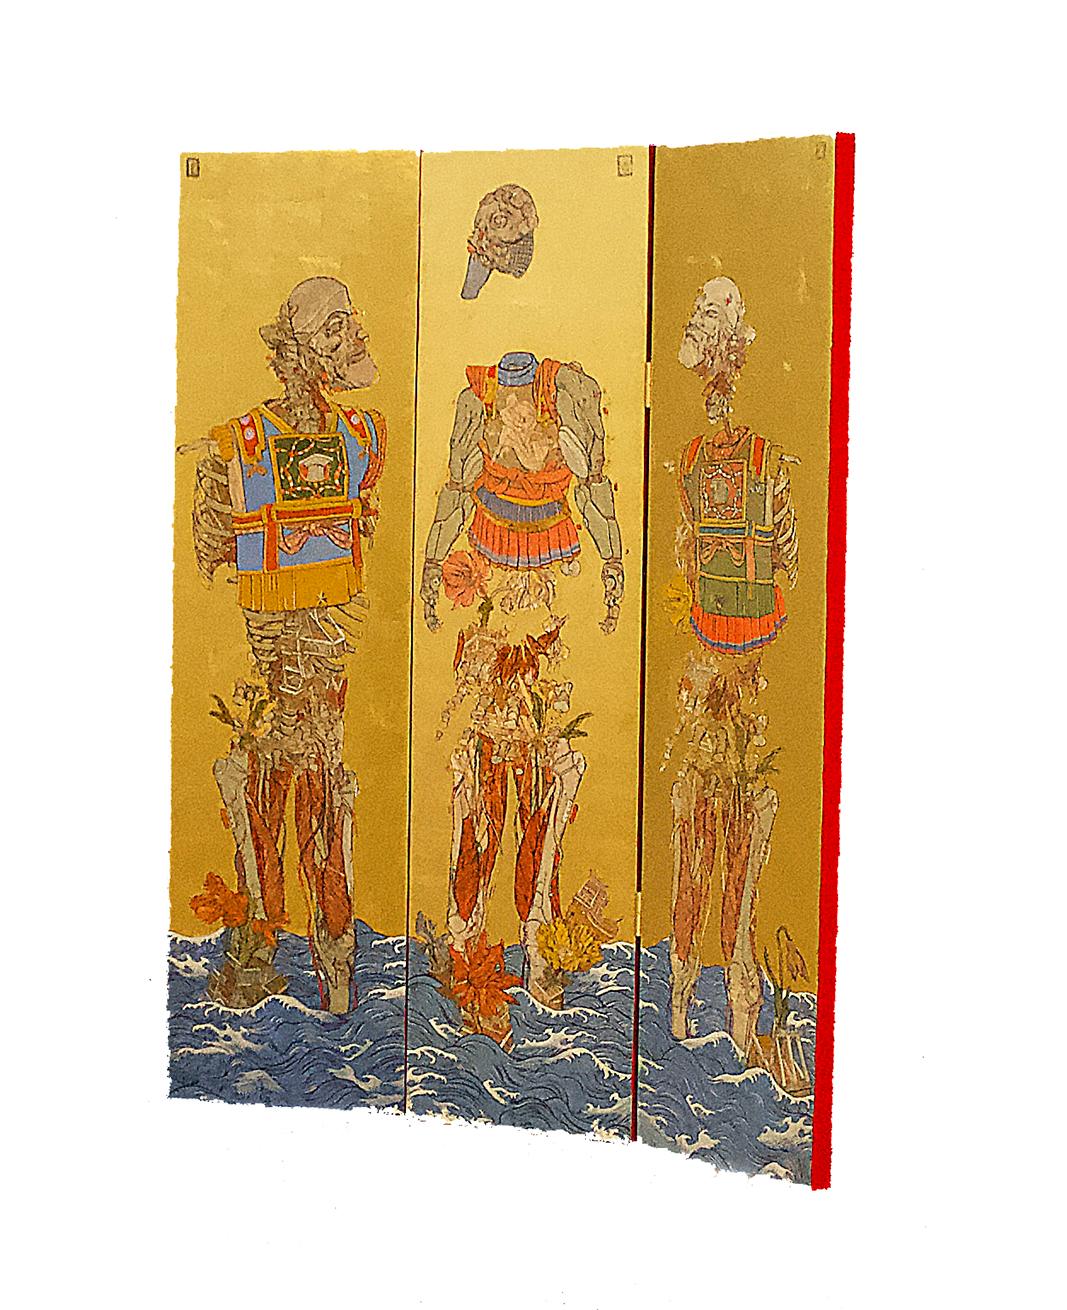 Les Trois Empereurs est un triptyque, dont Papamichalopoulos a créé un paravent Byōbu-ē. Chaque panneau mesure 150x40 cm / 59 x 16 inches.
L'œuvre est créée à l'aide d'encre, de tempérament d'œuf et de feuilles d'or. Illustrées et inspirées de